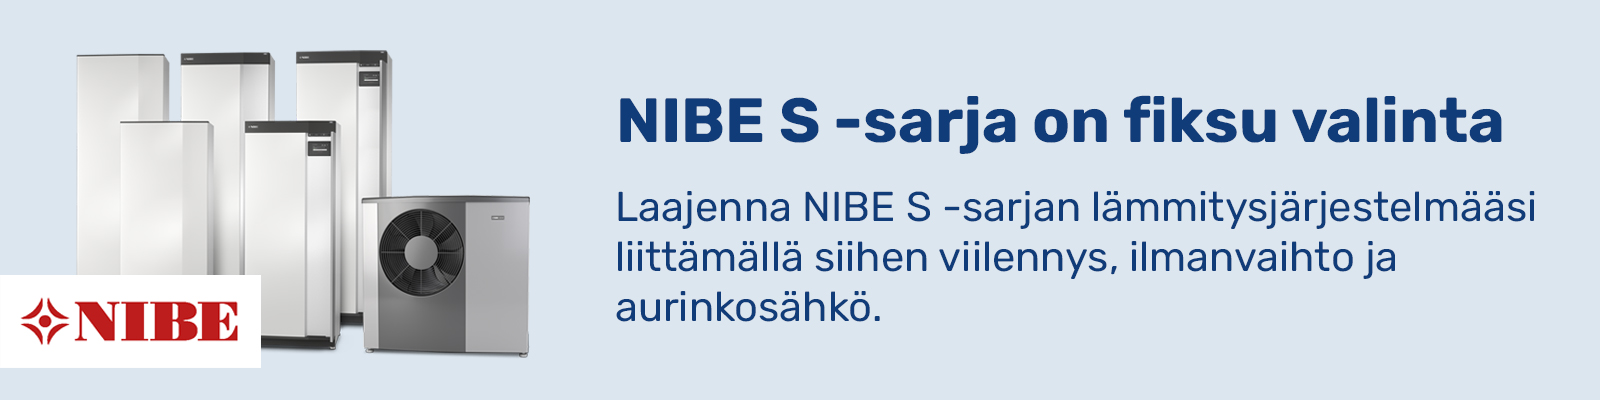 NIBE S -sarja banneri tuotekuva 1600x400p x»